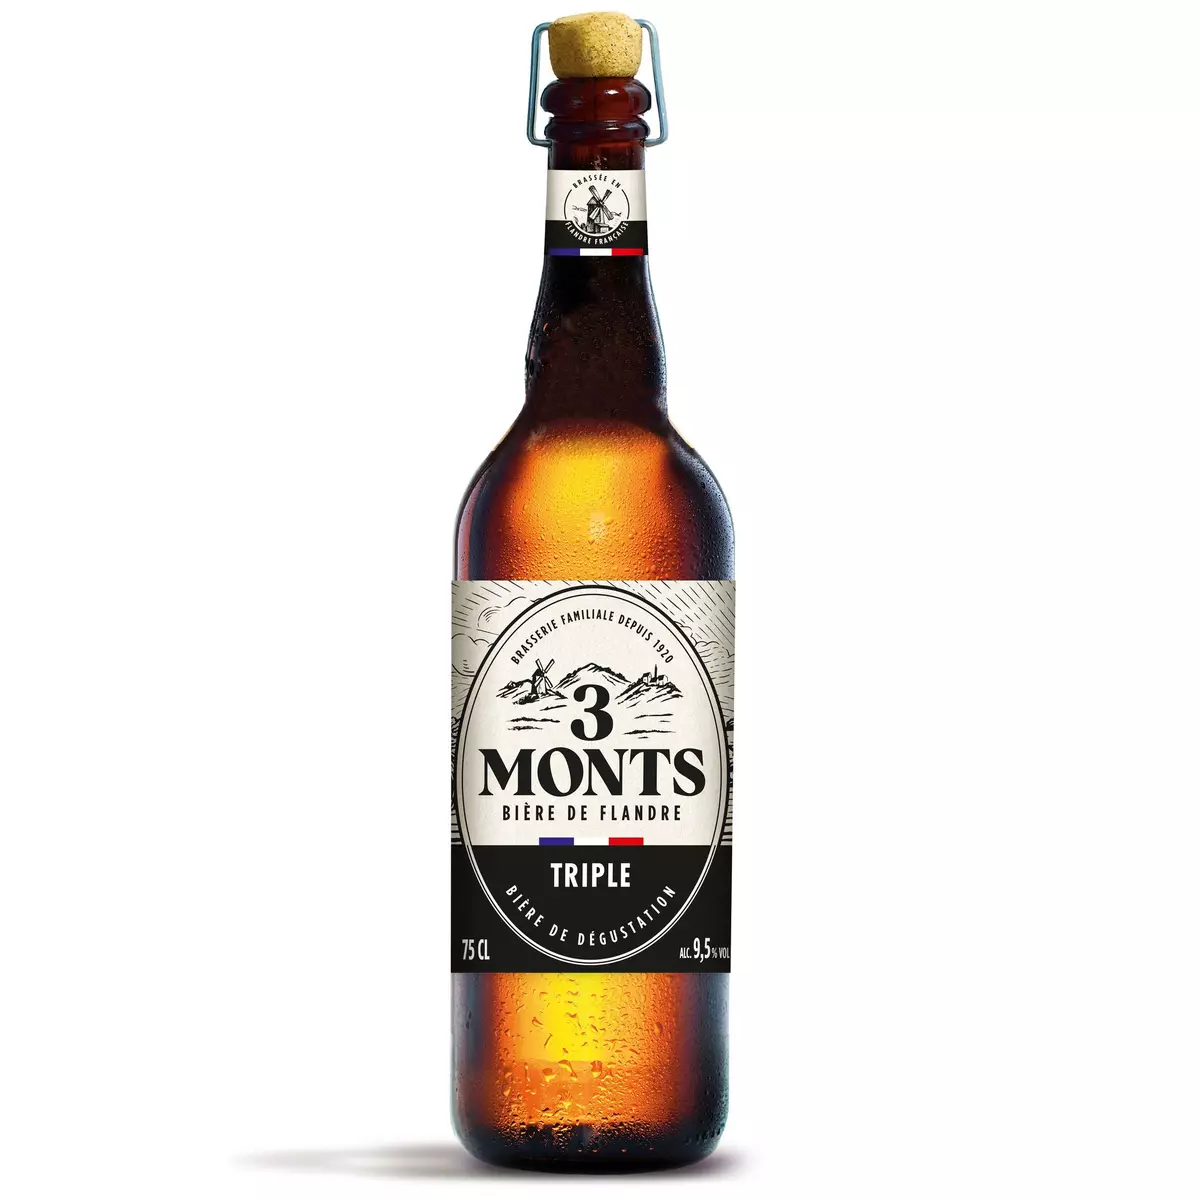 3 MONTS Bière blonde triple des Flandres grande réserve 9,5% 75cl